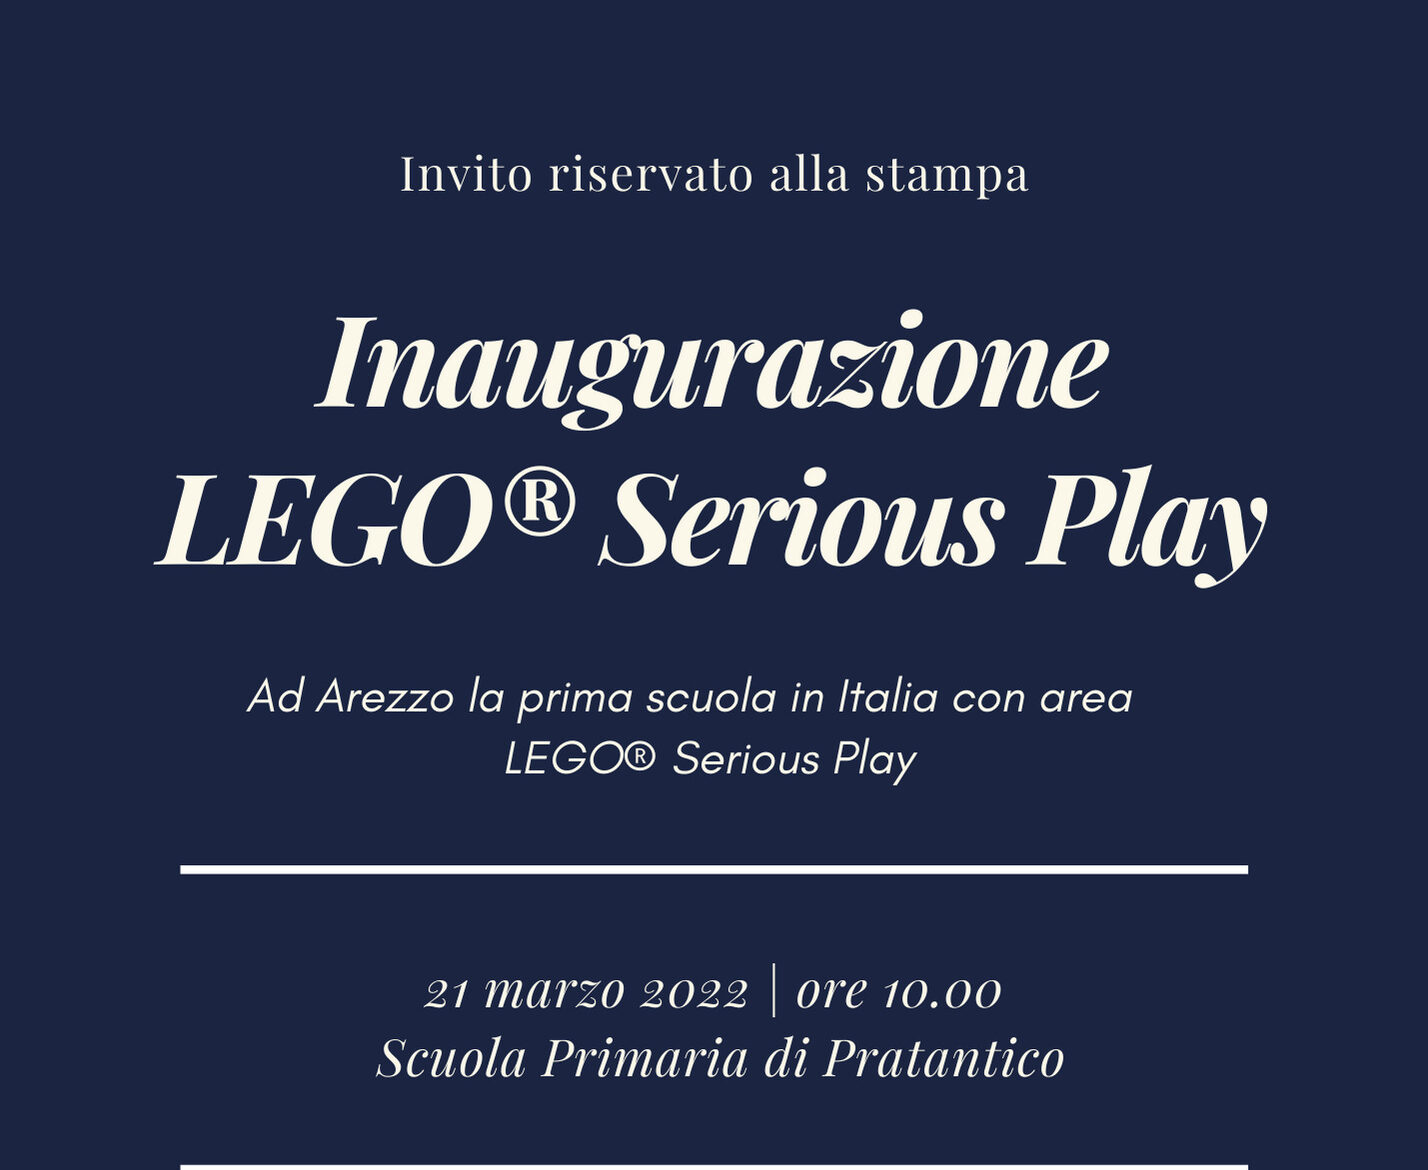 Ad Arezzo l’inaugurazione della prima scuola italiana con area LEGO(R) Serious Play